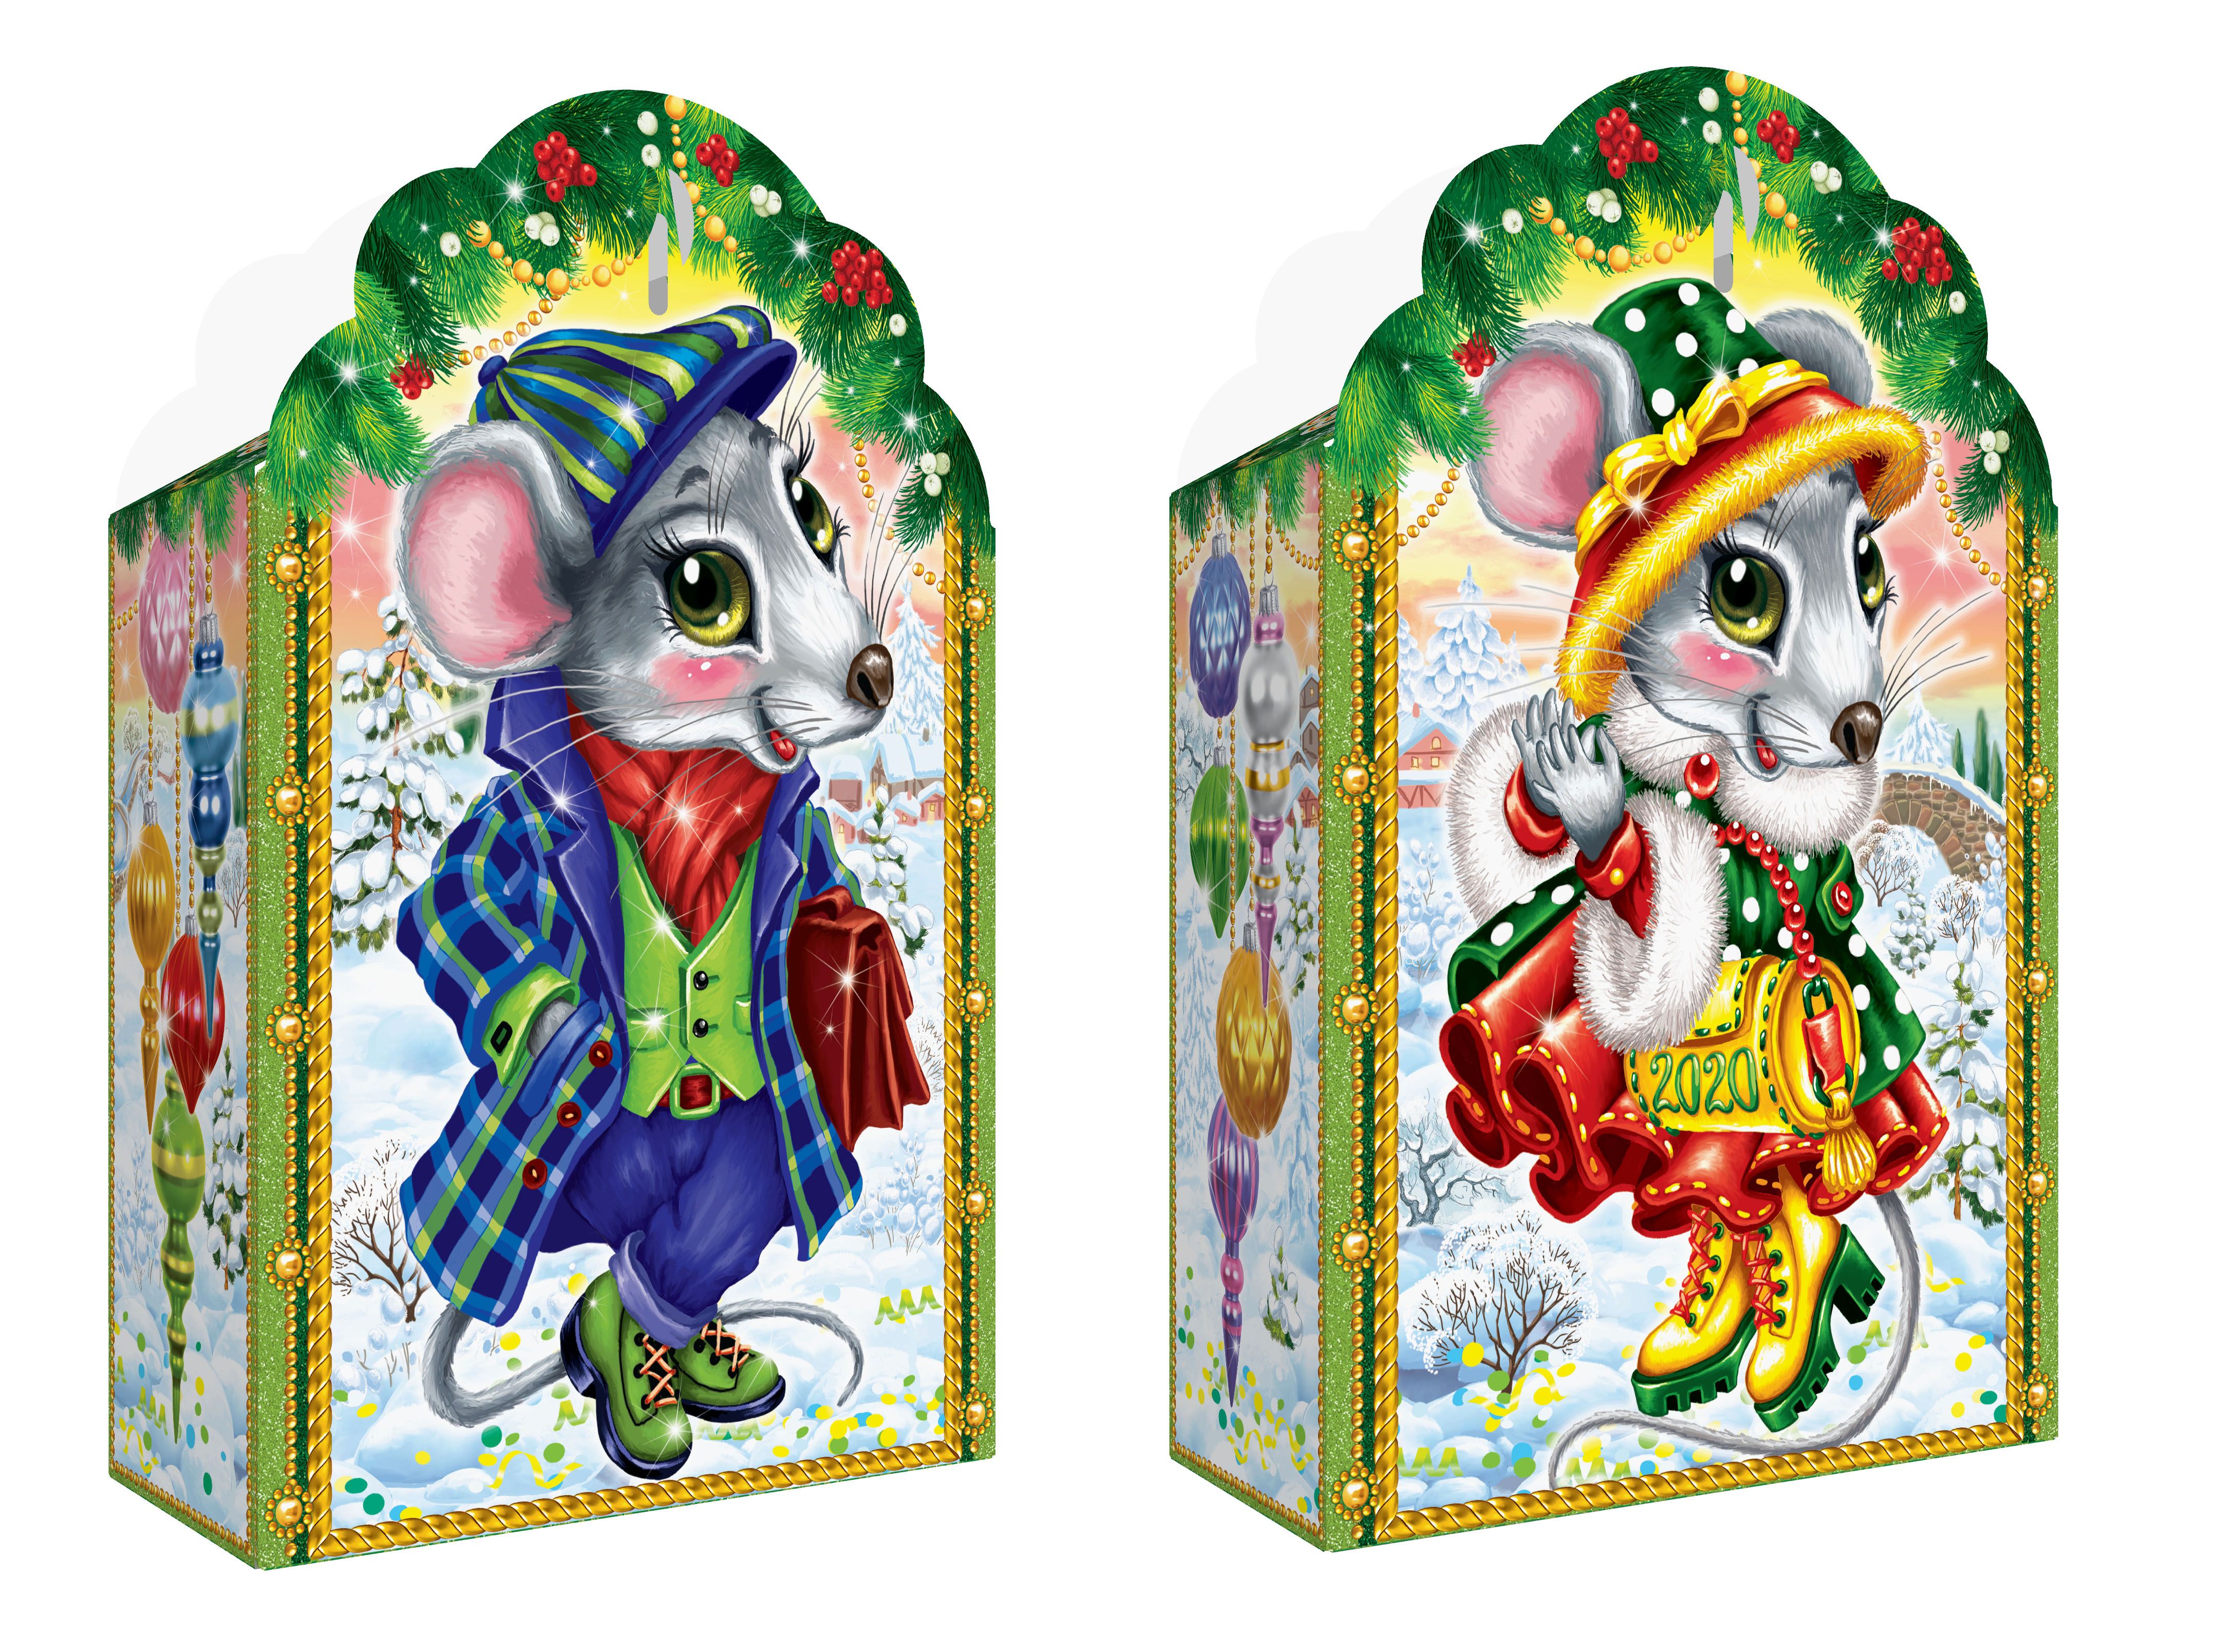 Мистер упаковка. Пакет подарочный мышата. Новогодний сладкий подарок мышка. Мышка упаковывает подарок. Детский сувенир мышка.